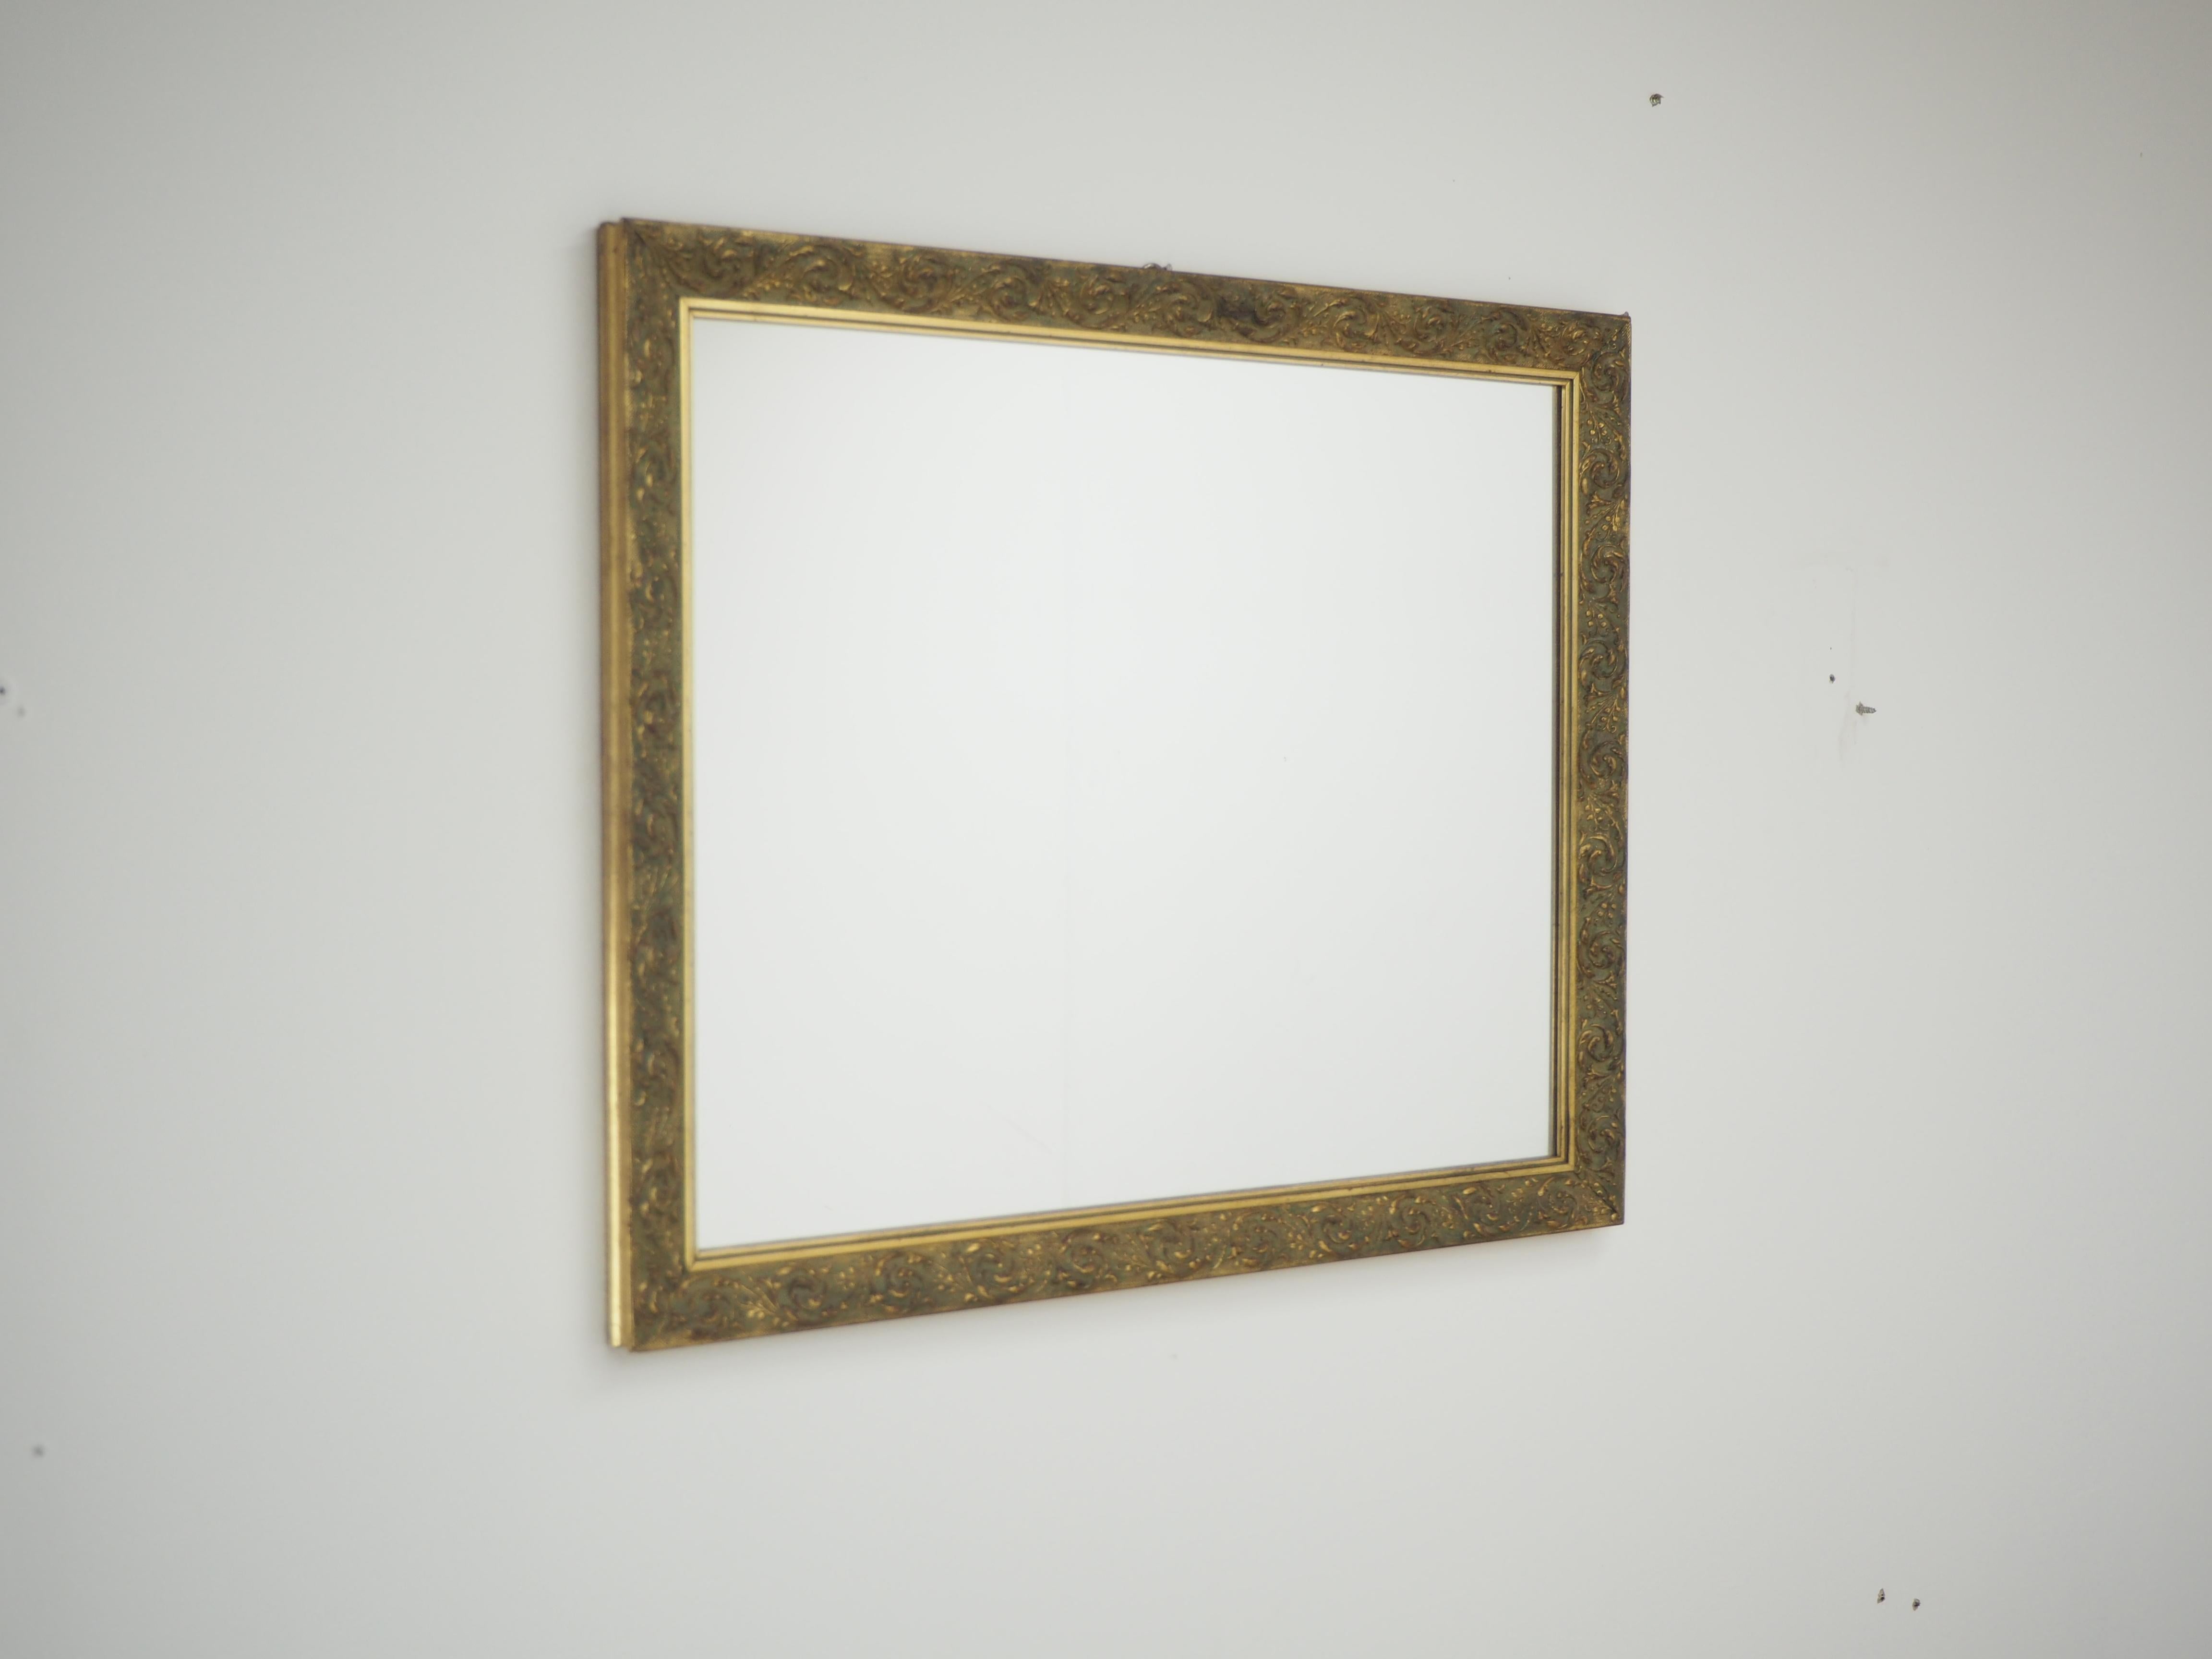 - Cadre en bois
- Fait à la main
- État d'origine
- Le miroir est le nouveau.